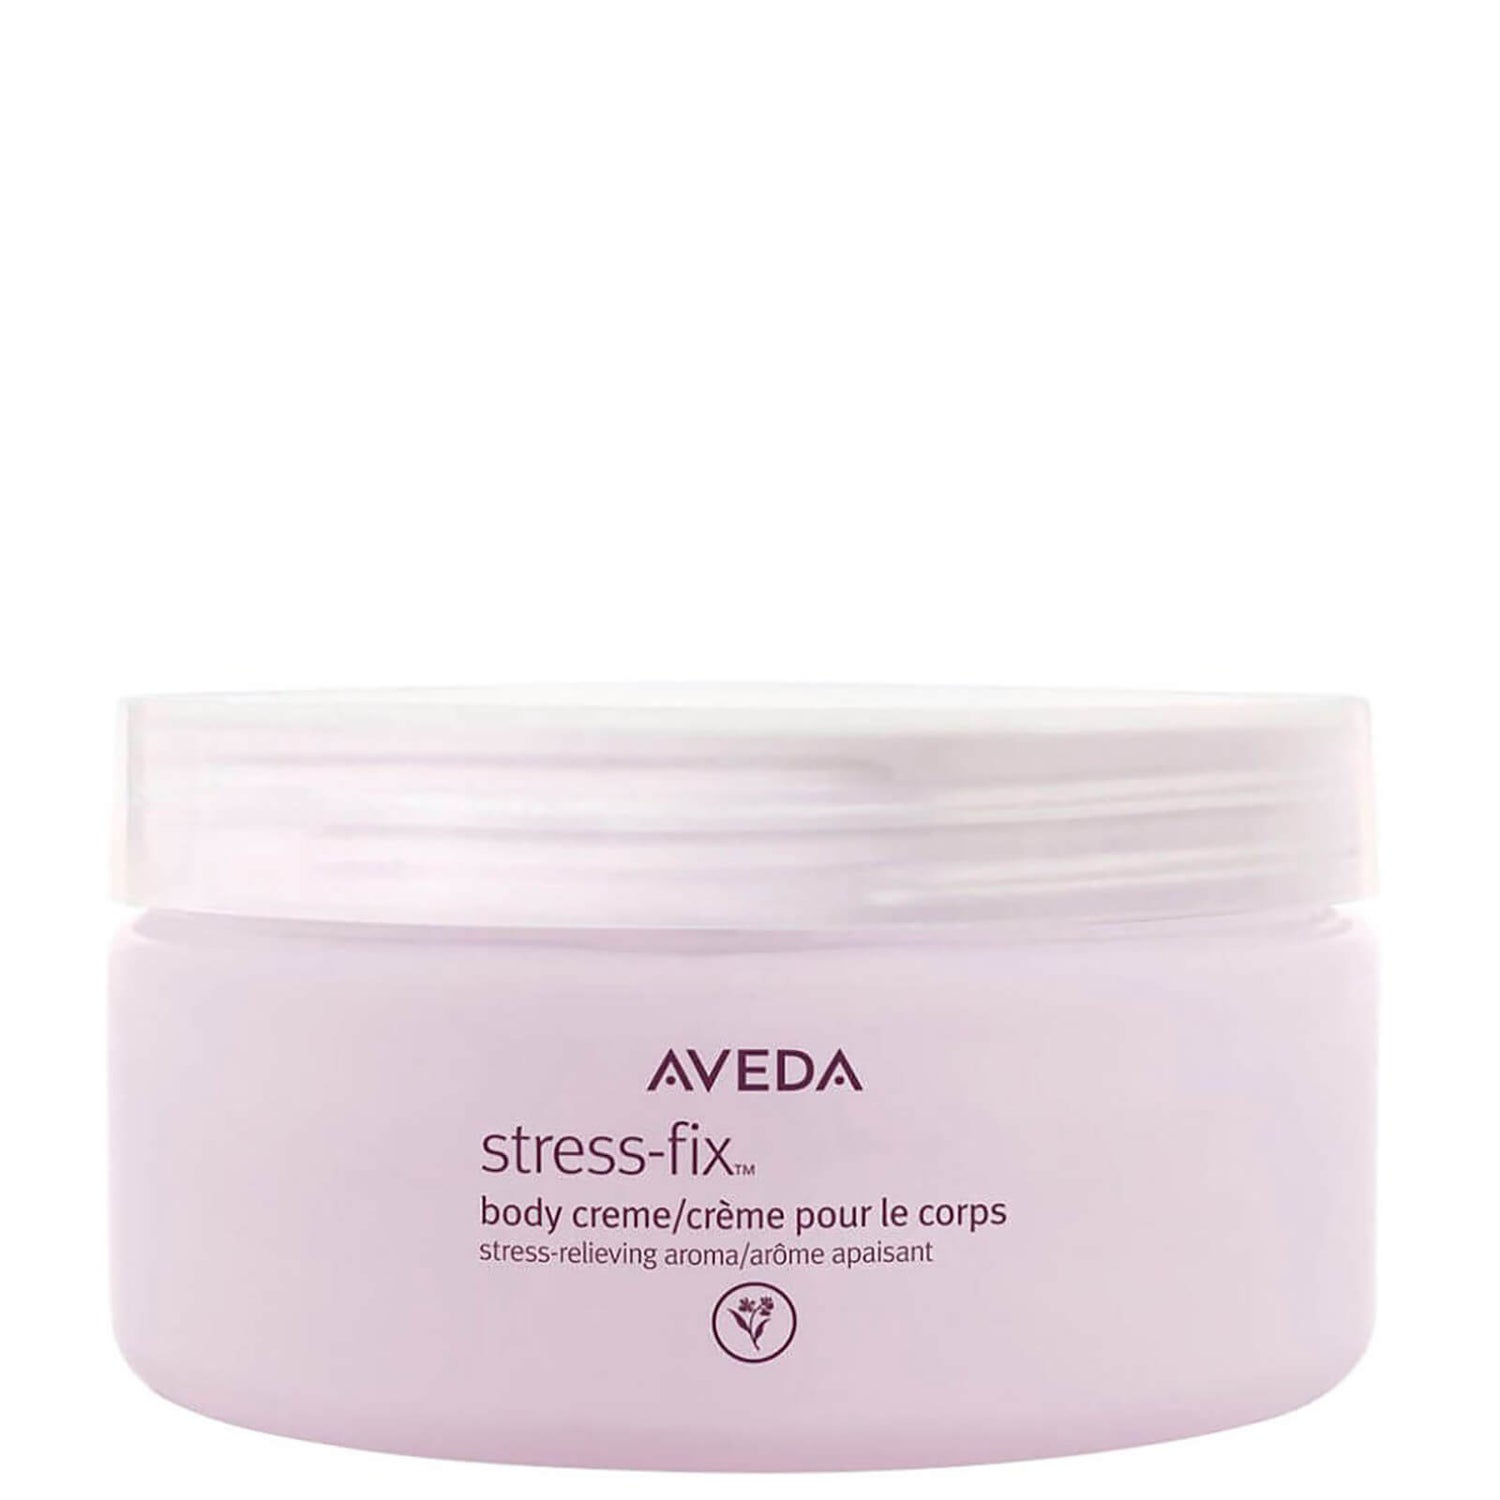 Aveda Stress-Fix crème corporelle 200ml